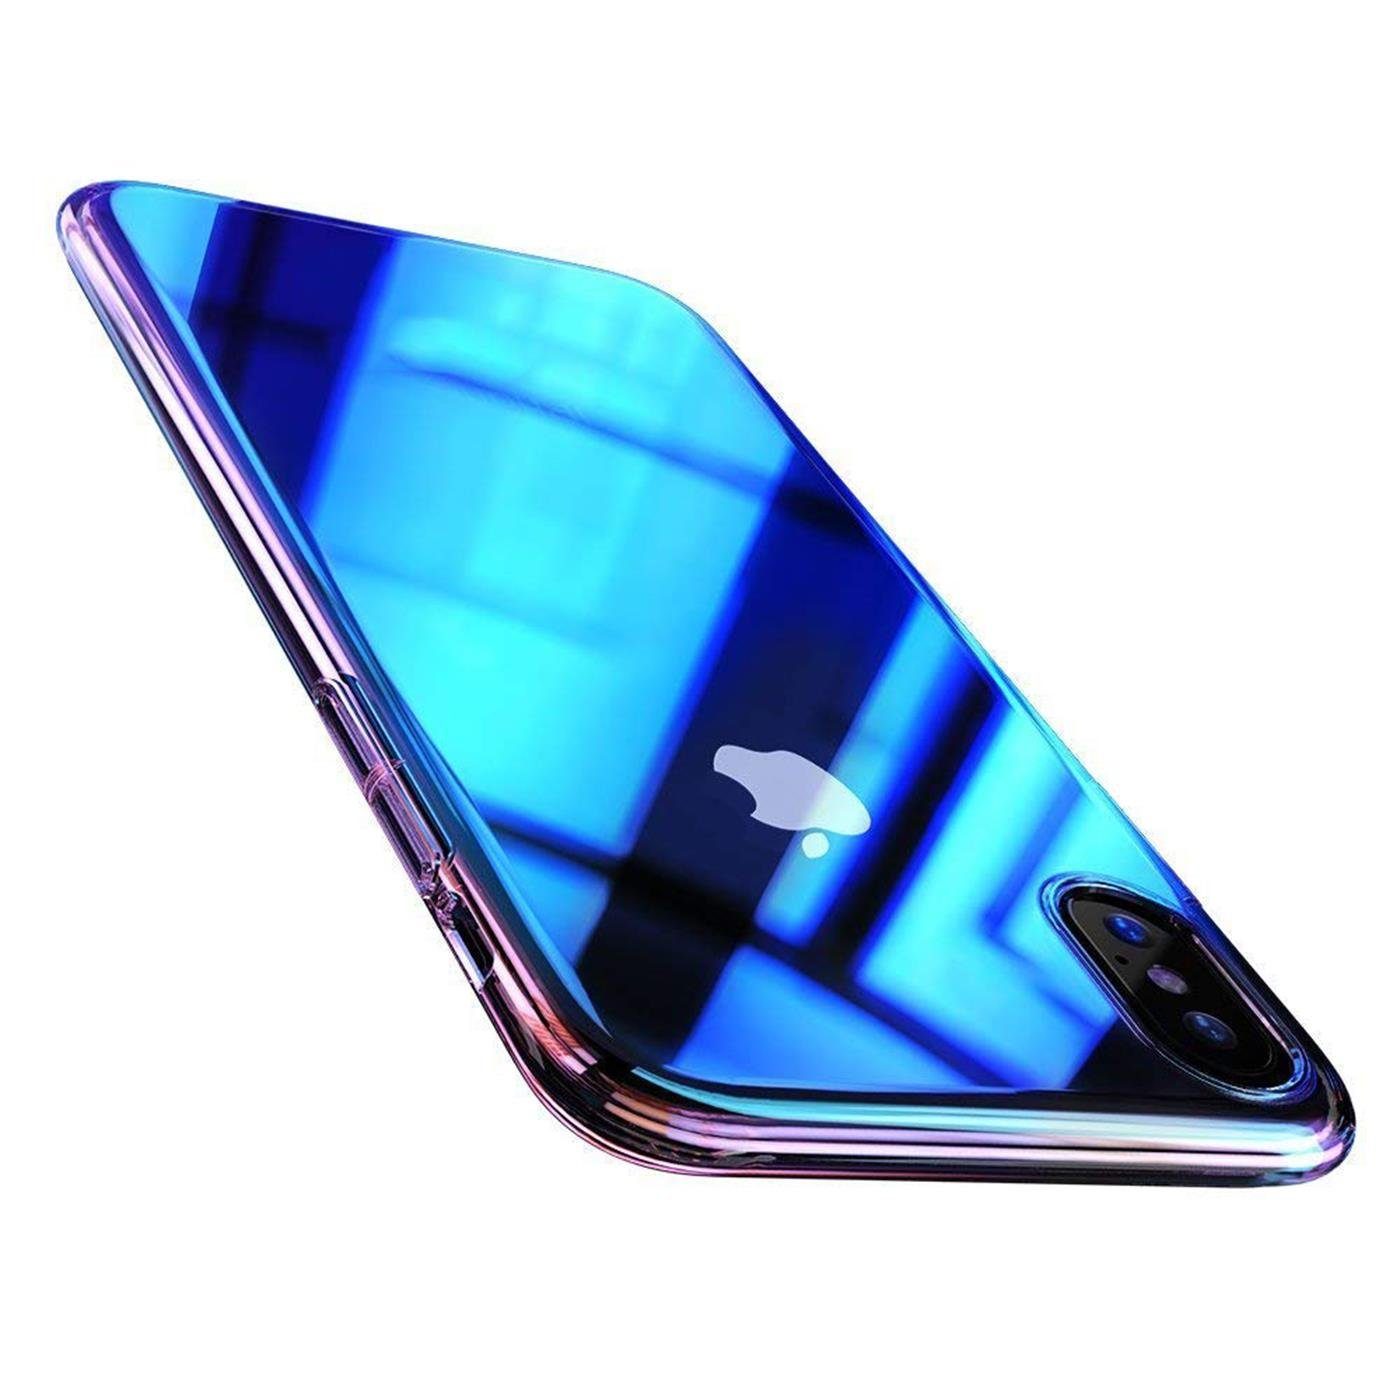 CoolGadget Handyhülle Farbverlauf Twilight Hülle für Samsung Galaxy J6 Plus  6 Zoll, Robust Hybrid Cover Kamera Schutz Hülle für Samsung J6 Plus Case